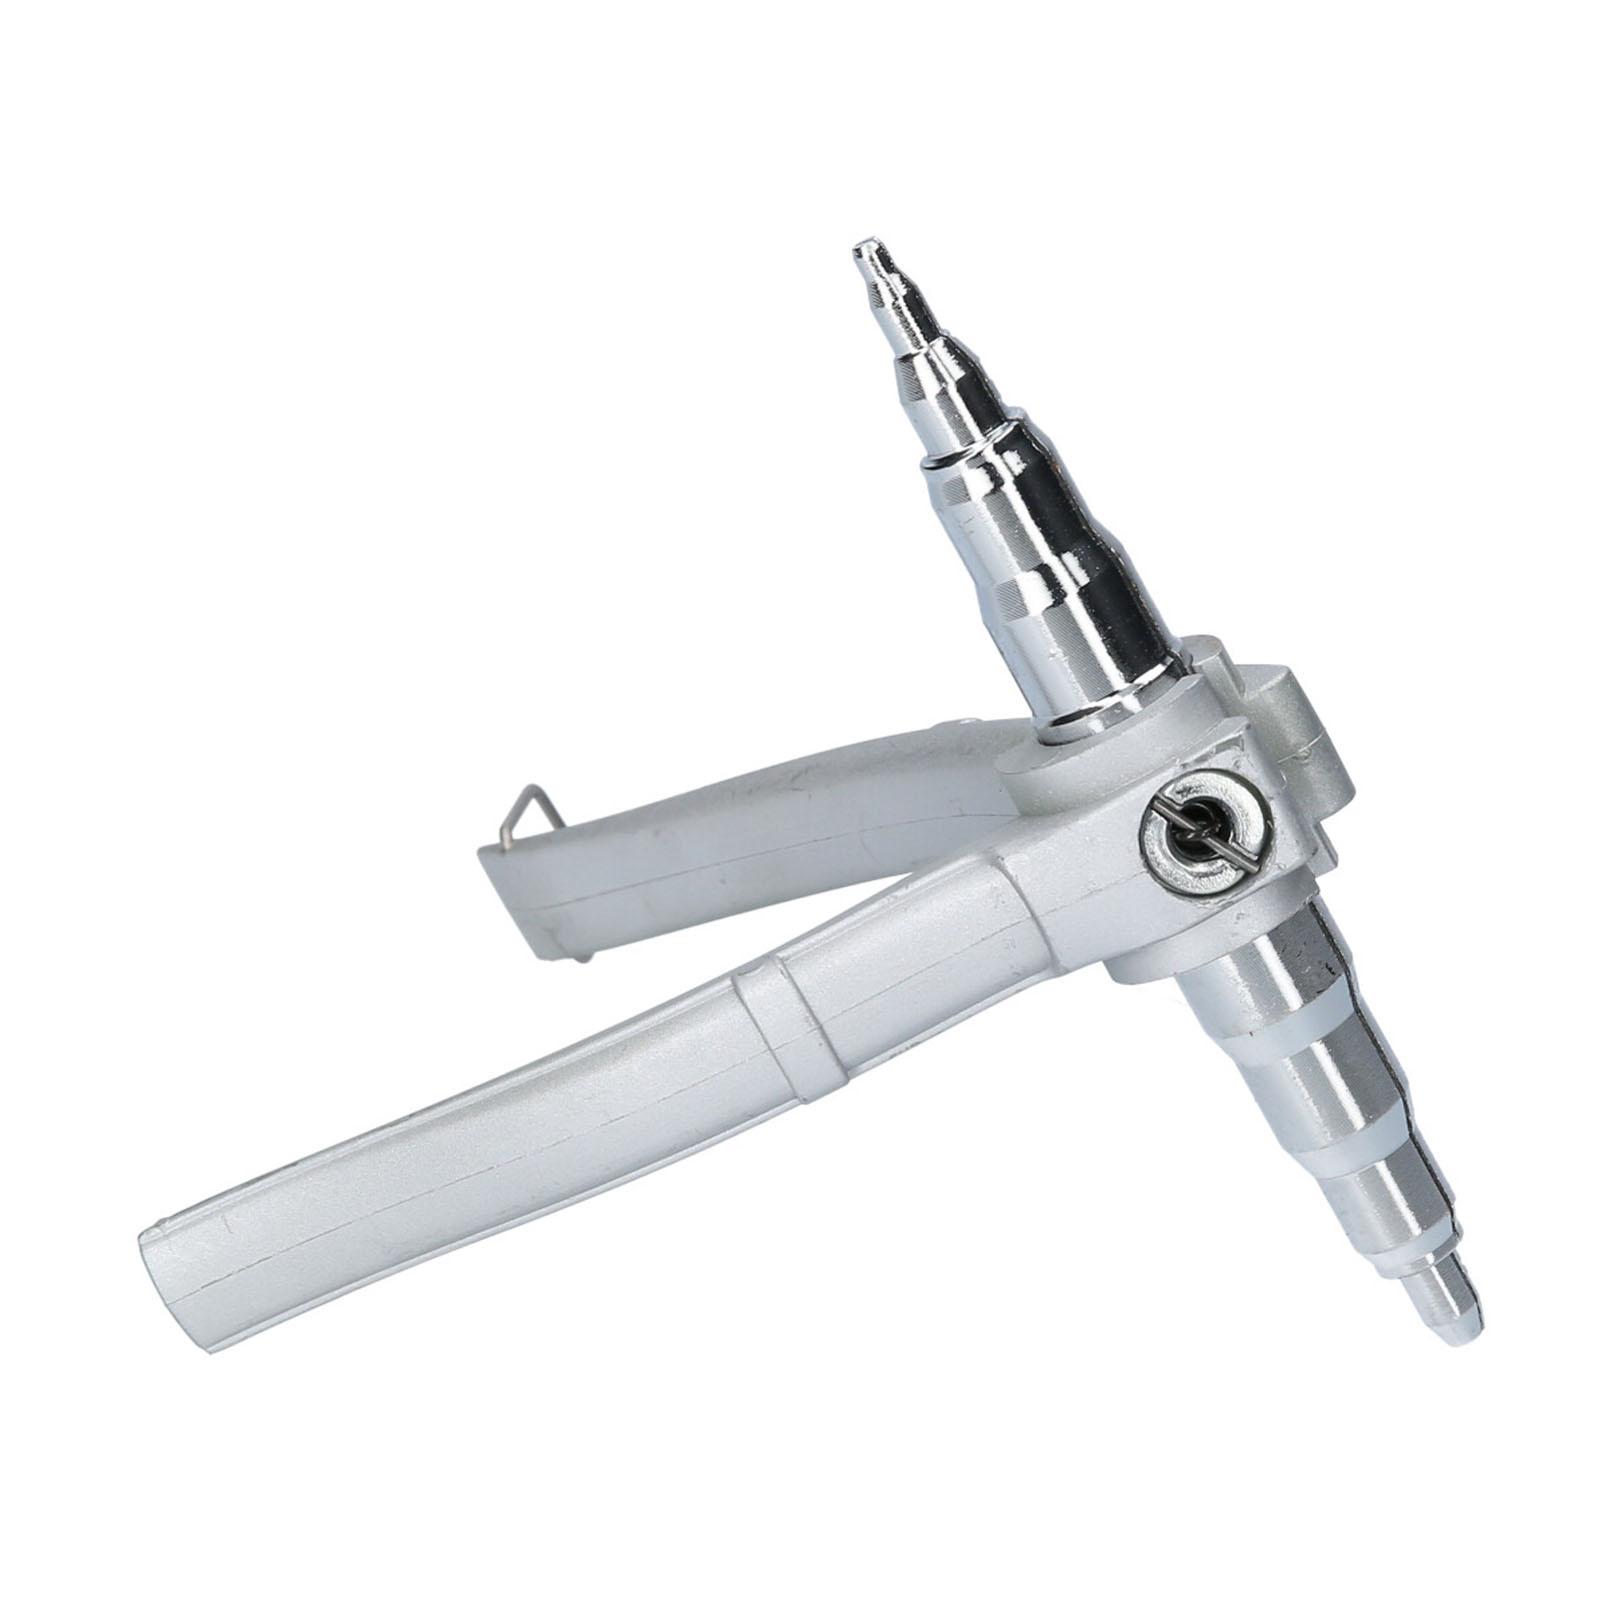 Công cụ sửa chữa ống đồng máy điều hòa không khí Expander Manual Swaging Hand Tool